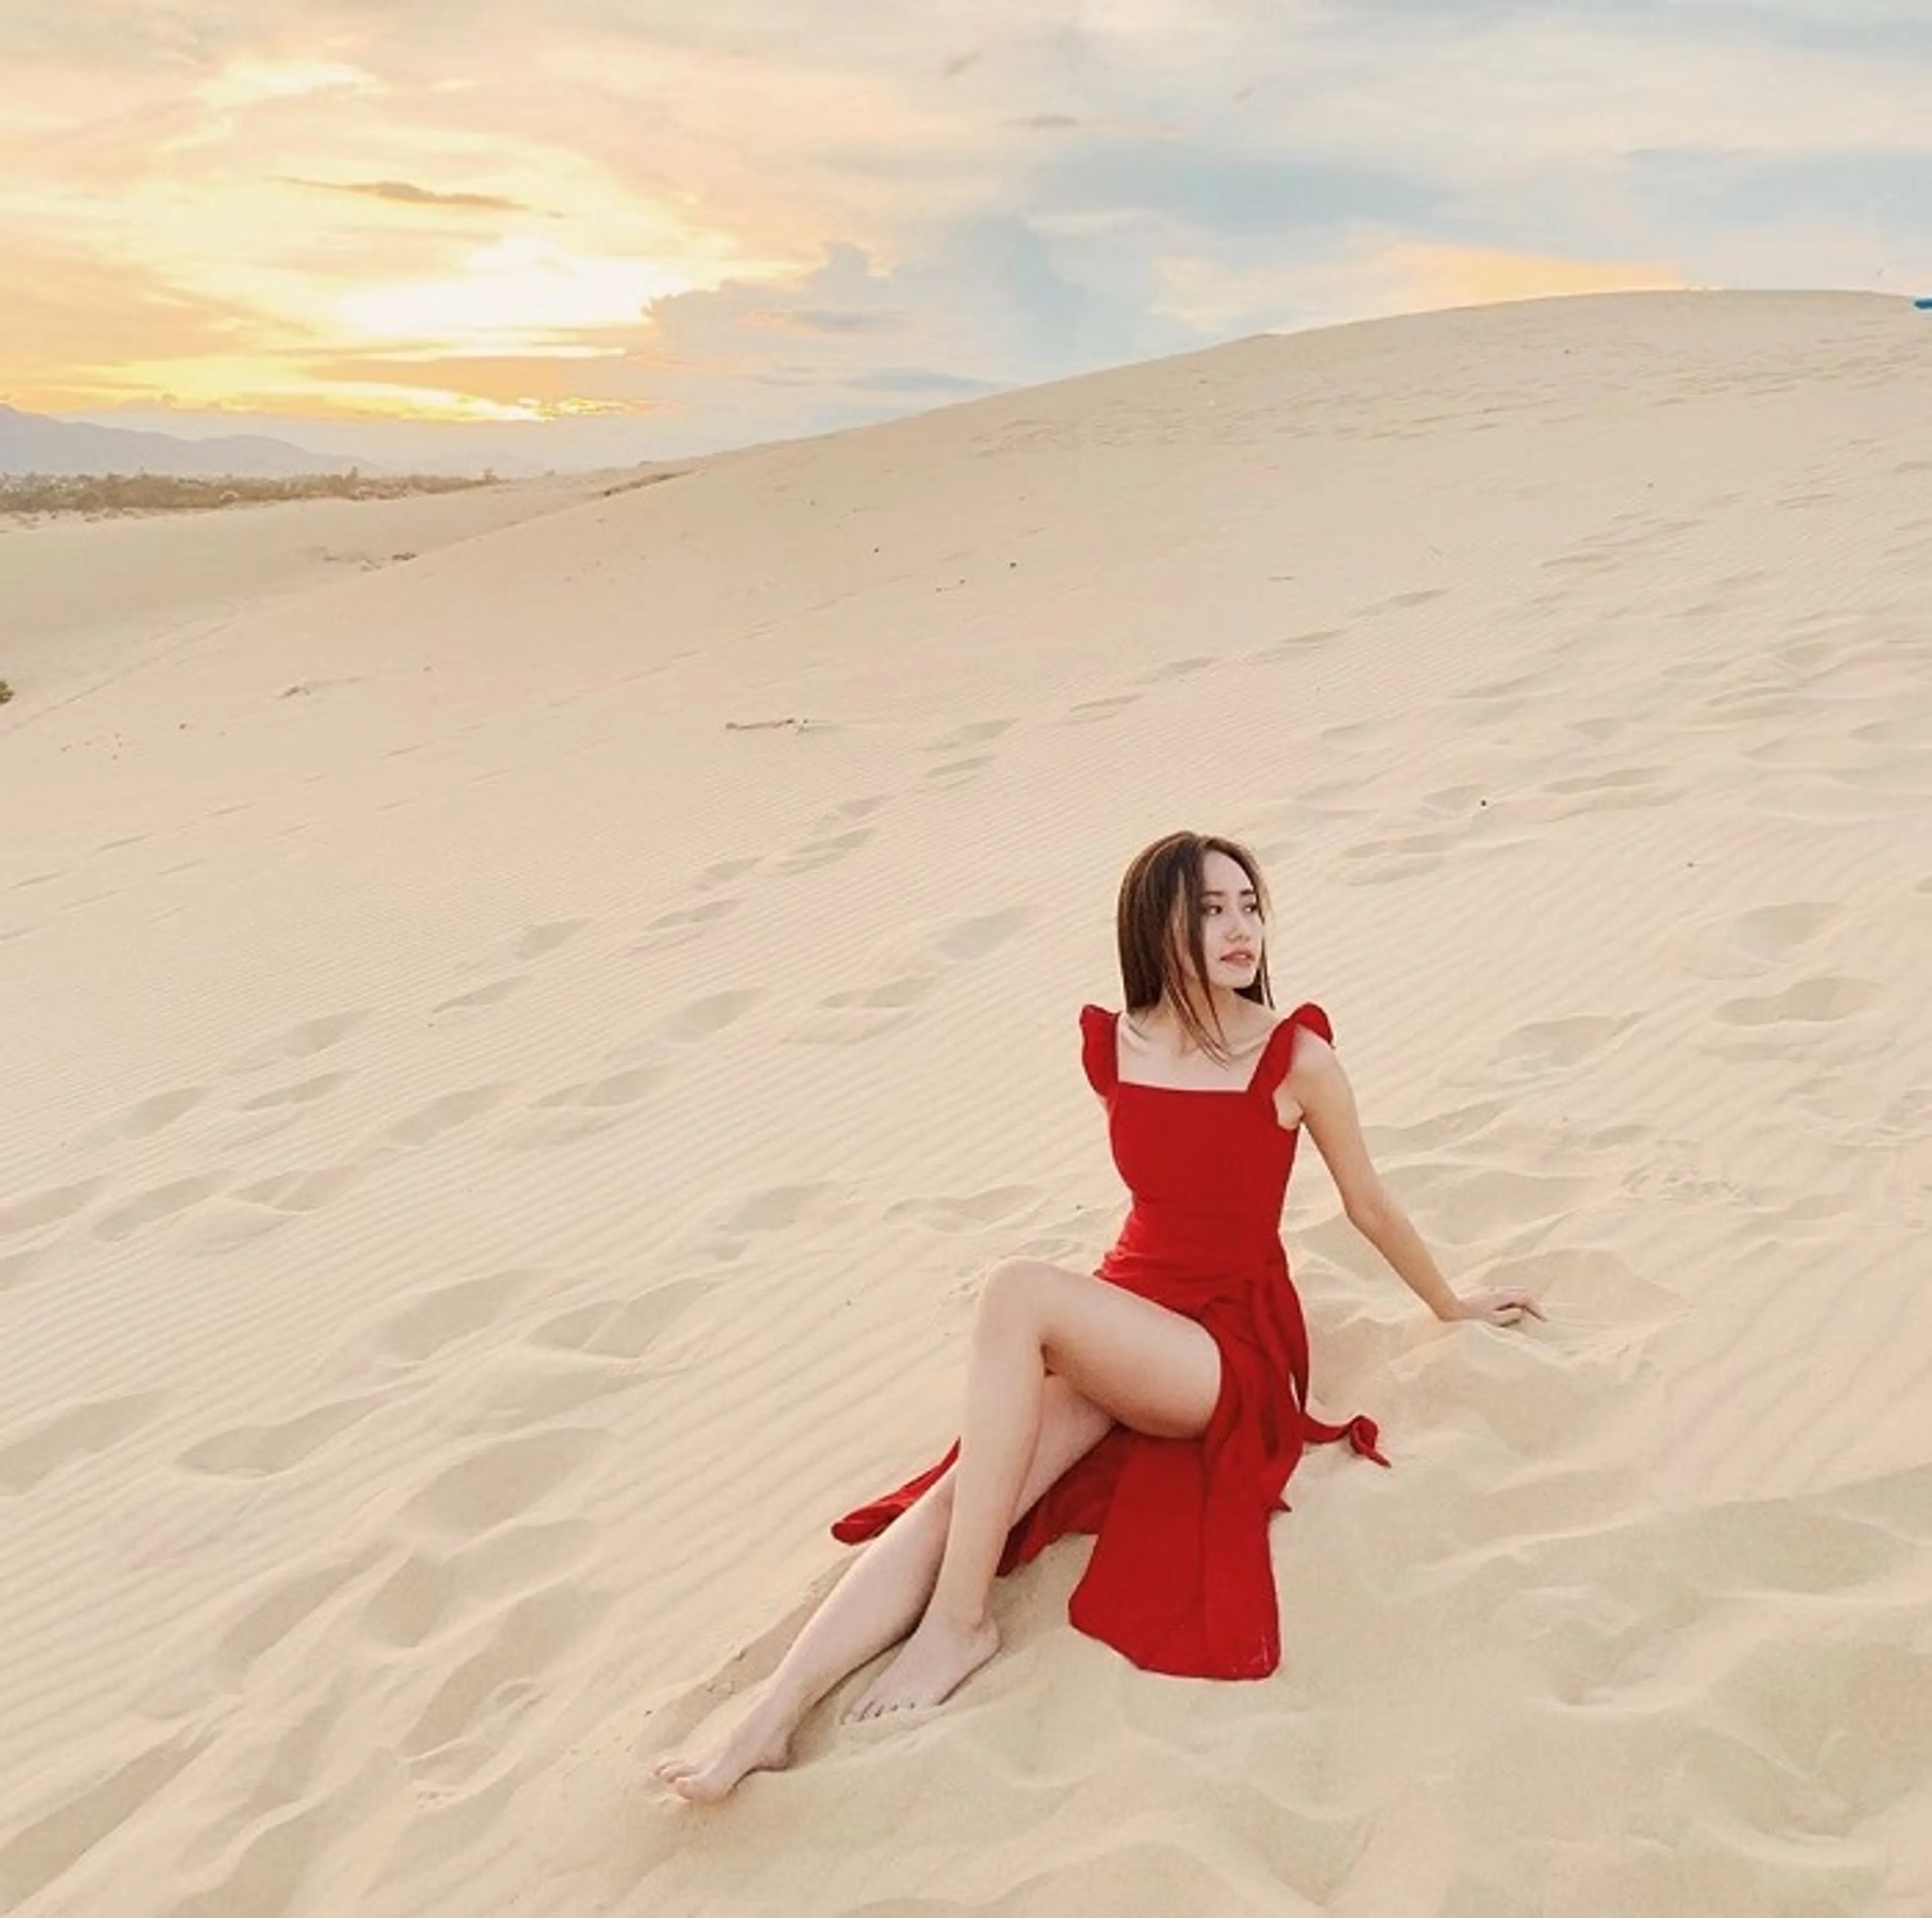 "Khám phá vẻ đẹp hoang sơ của Cồn cát Quang Phú, điểm đến nổi bật ở Quảng Bình"